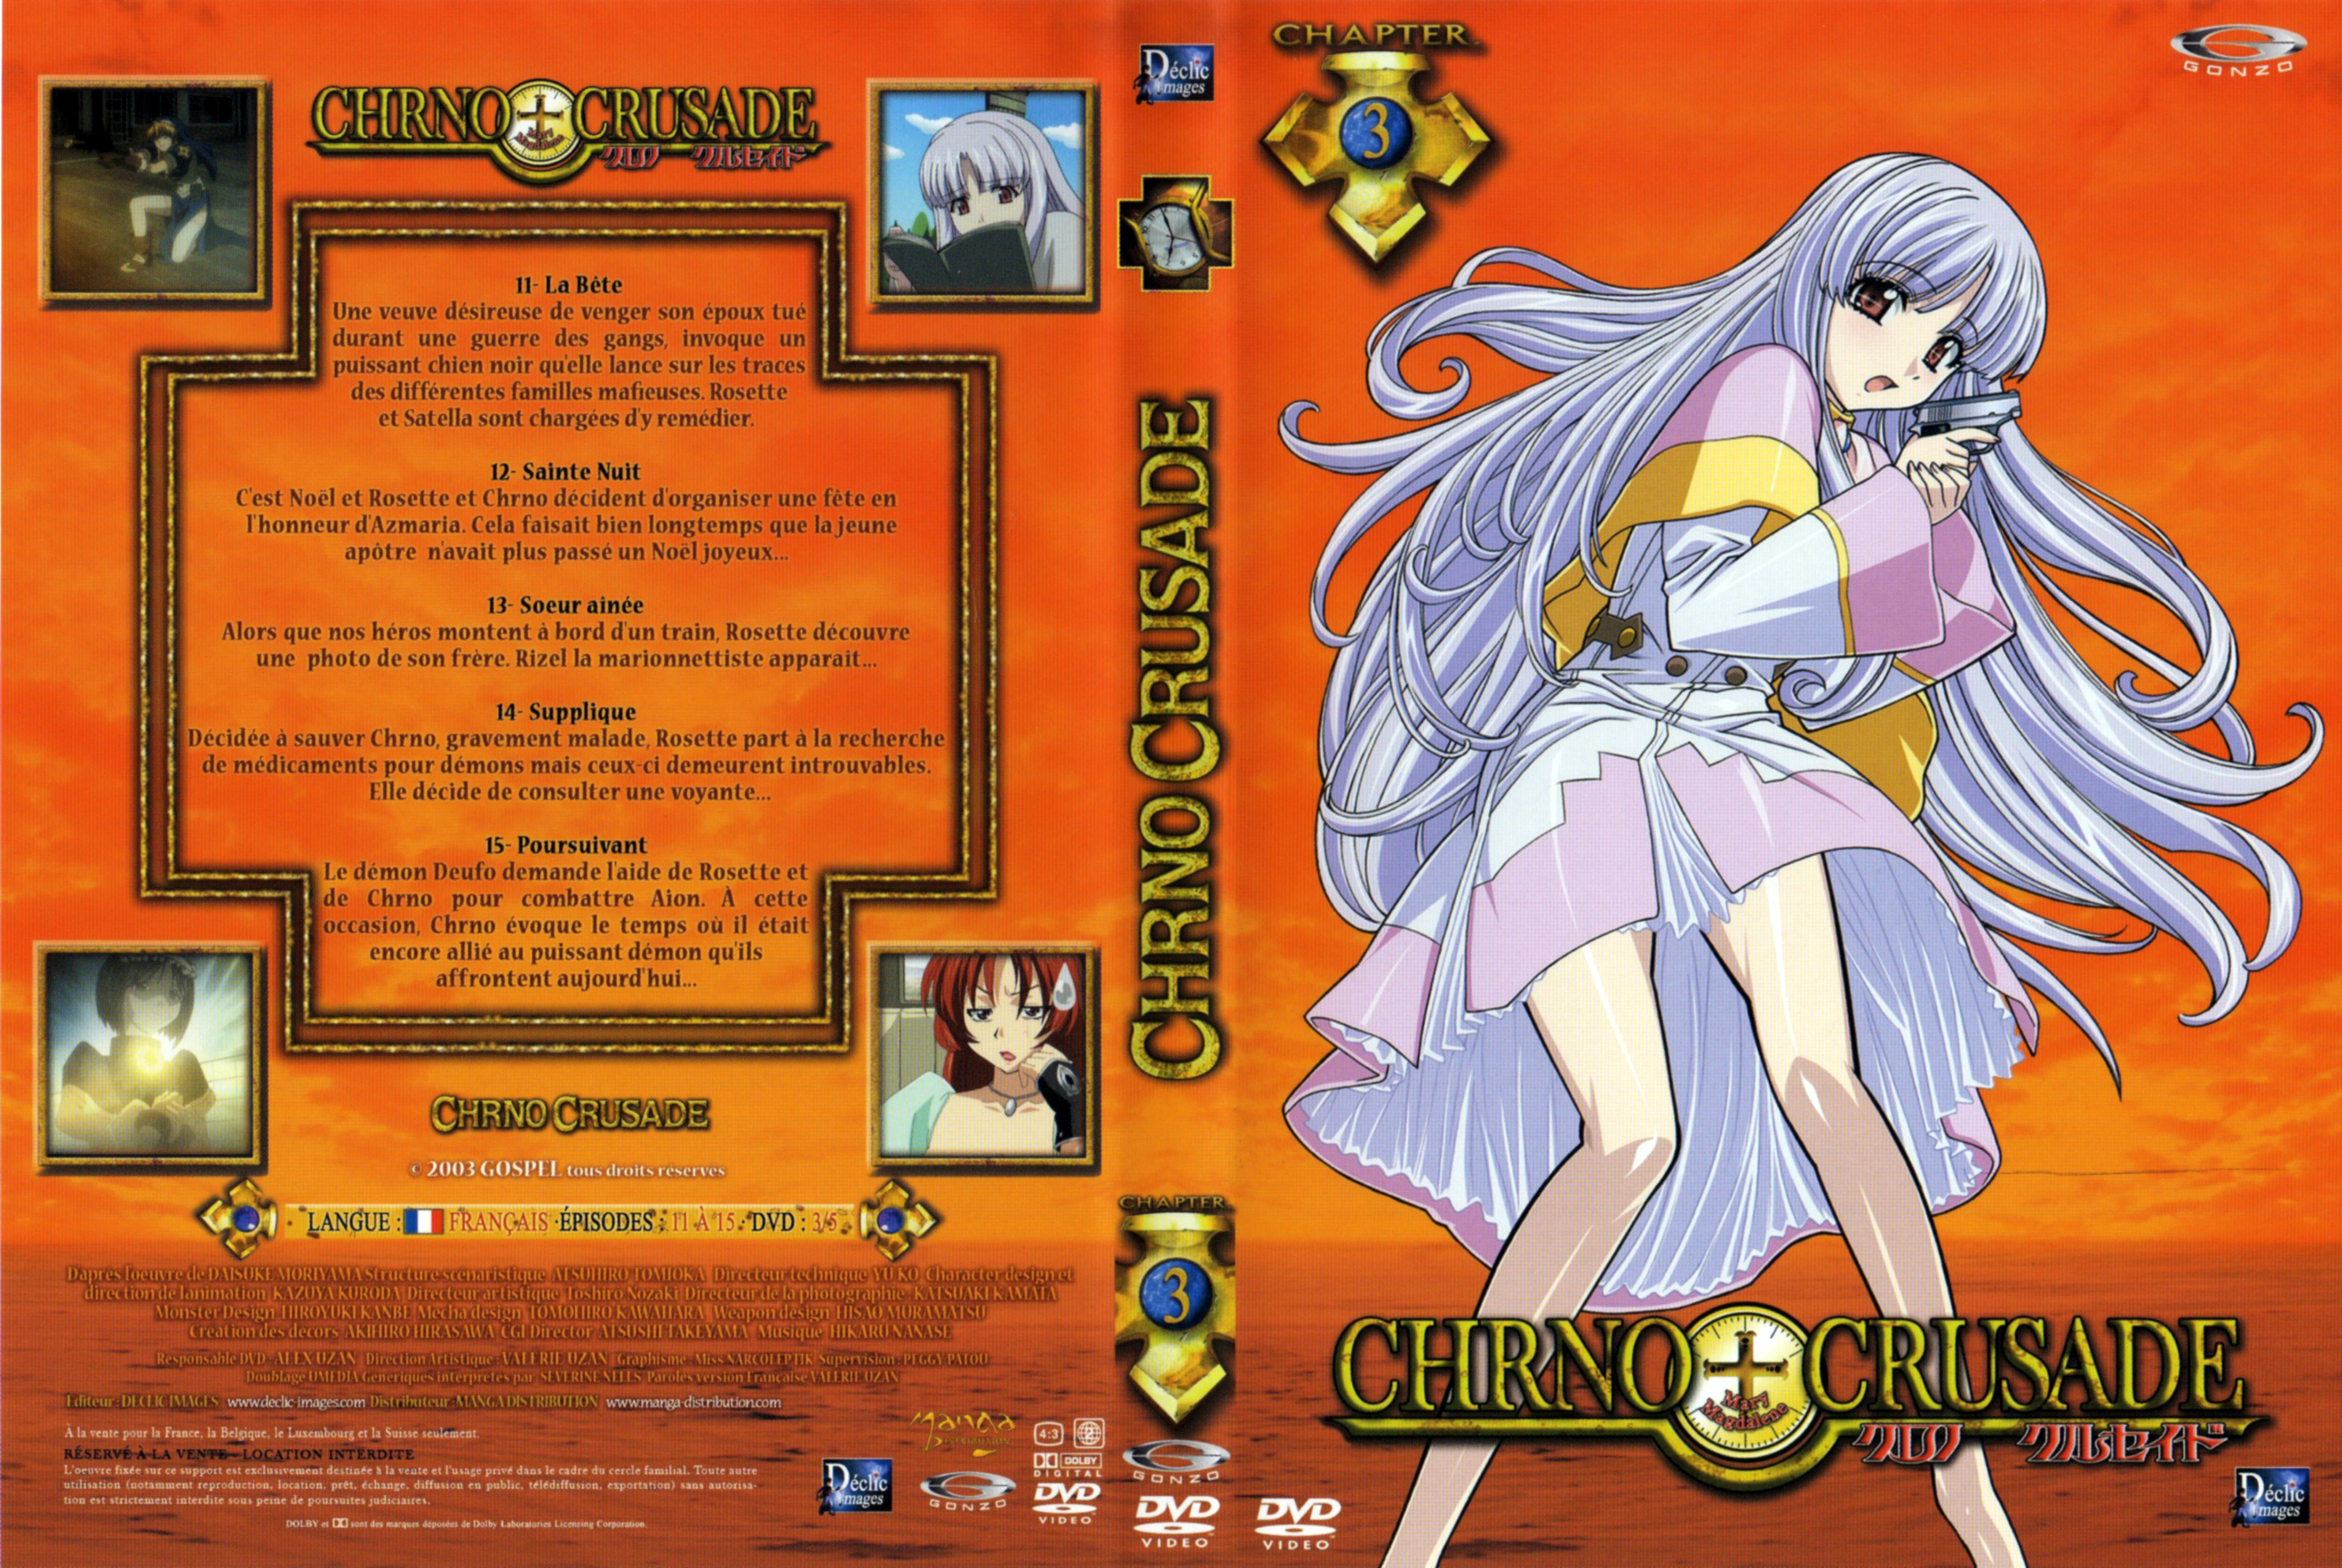 Jaquette DVD Chrno Crusade vol 3 v2